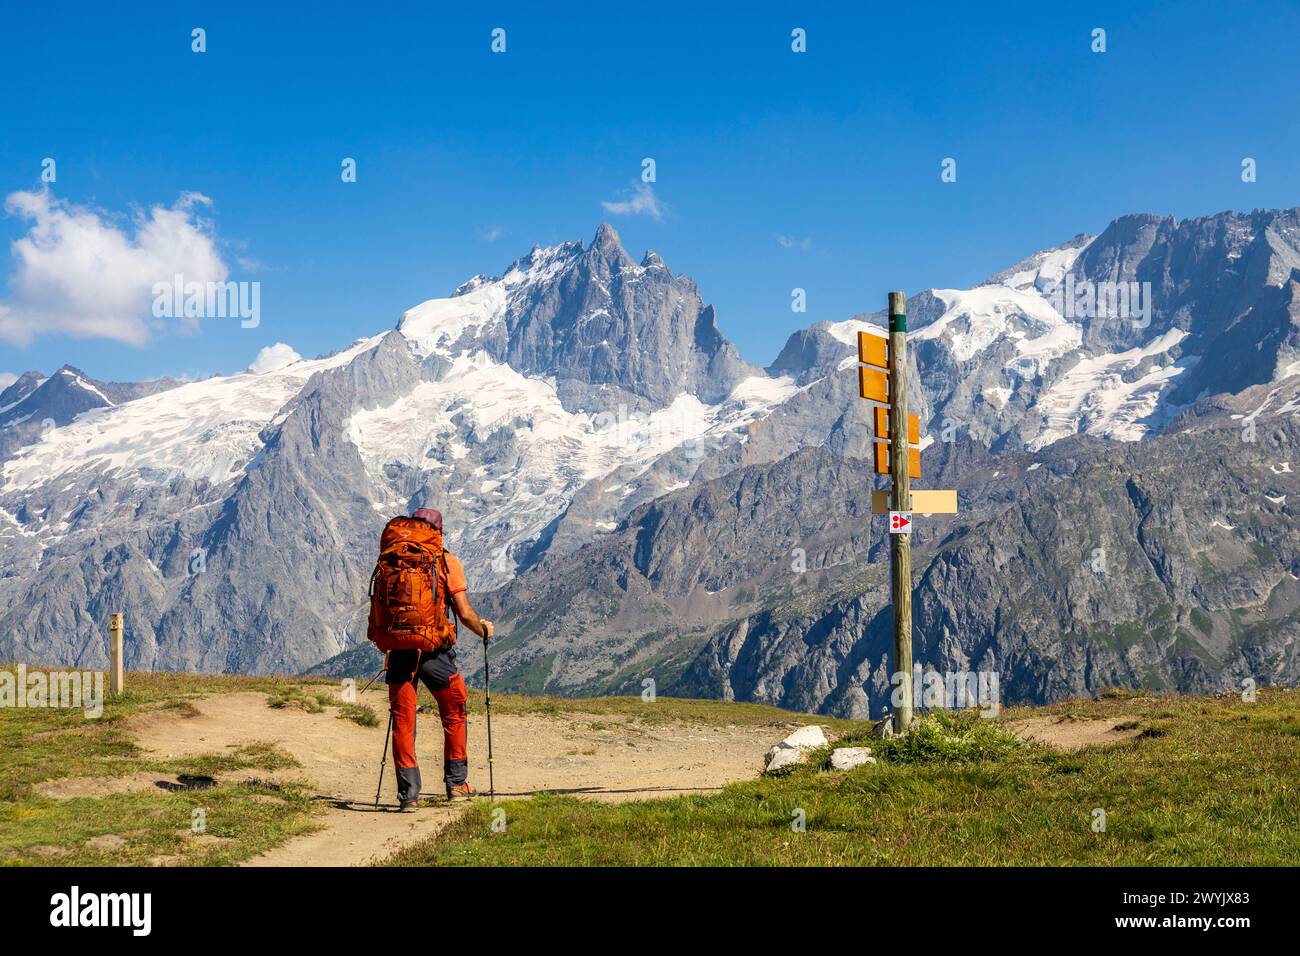 Francia, Hautes-Alpes, la grave, valle Oisans, altopiano Emparis al passo Souchet (2356 m) sul sentiero escursionistico GR 54, sullo sfondo la parete nord del Meije (3983 m), il Râteau (3809 m) e il ghiacciaio Girose nel Parco Nazionale degli Ecrins Foto Stock